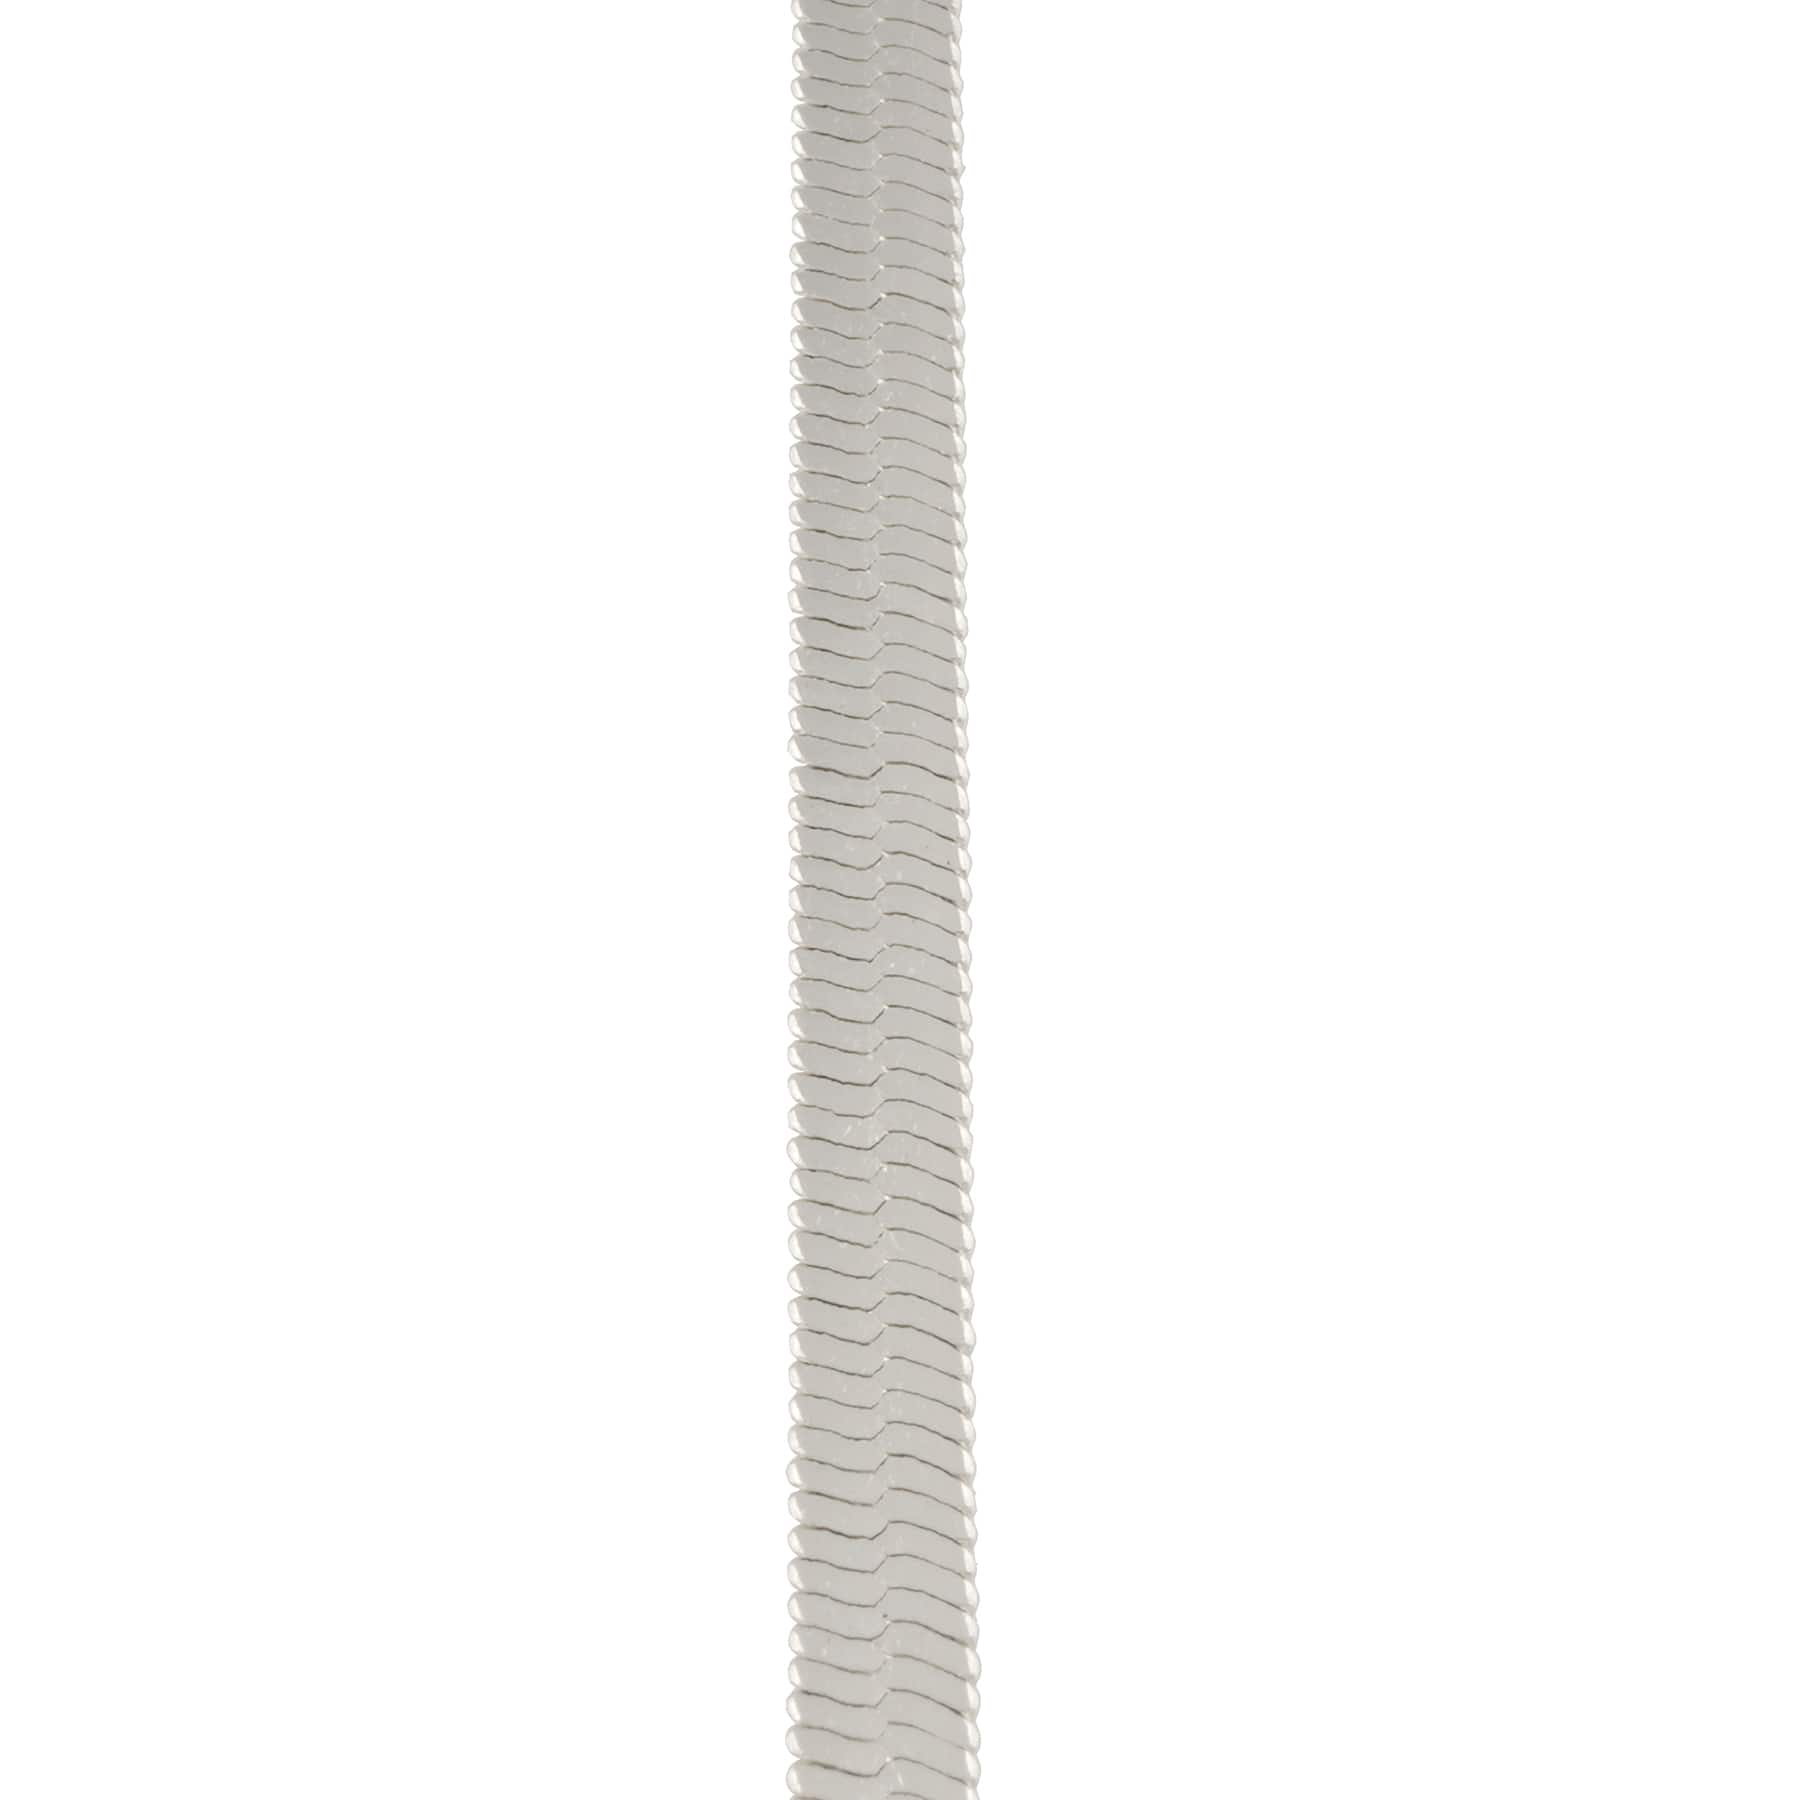 6 Packs: 2 ct. (12 total) Herringbone Necklaces by Bead Landing&#x2122;